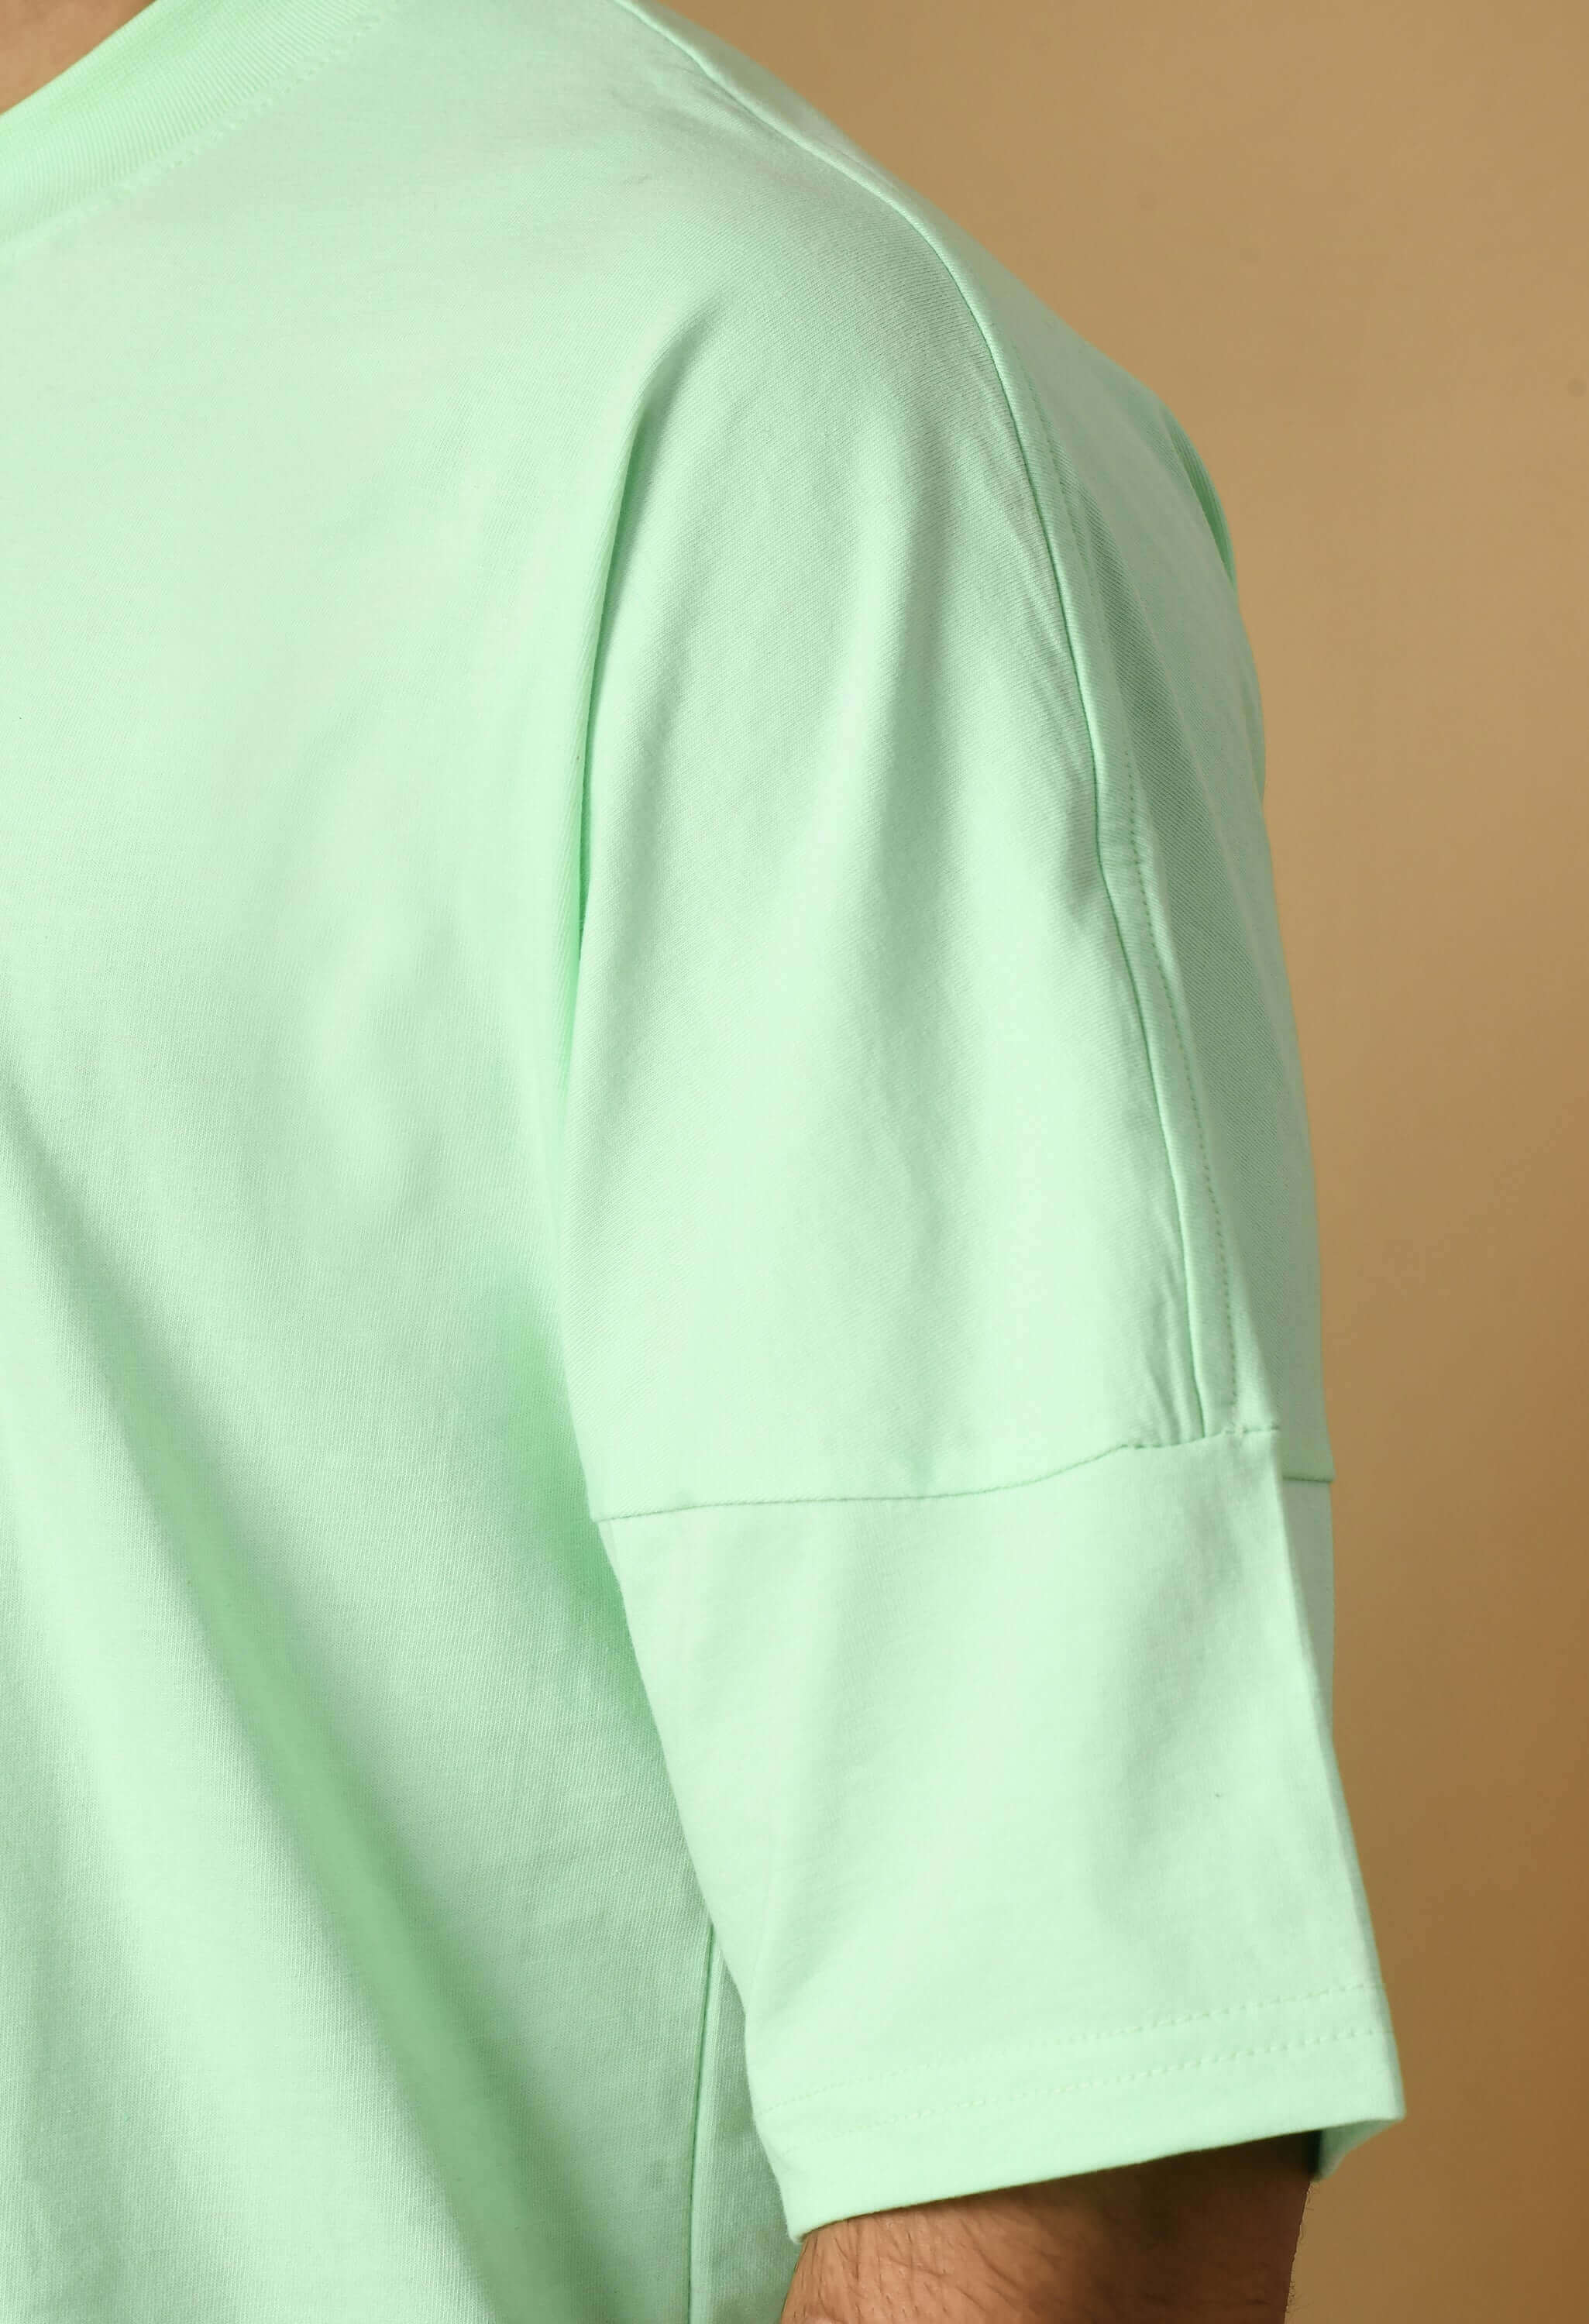 mintgreen cotton t-shirt